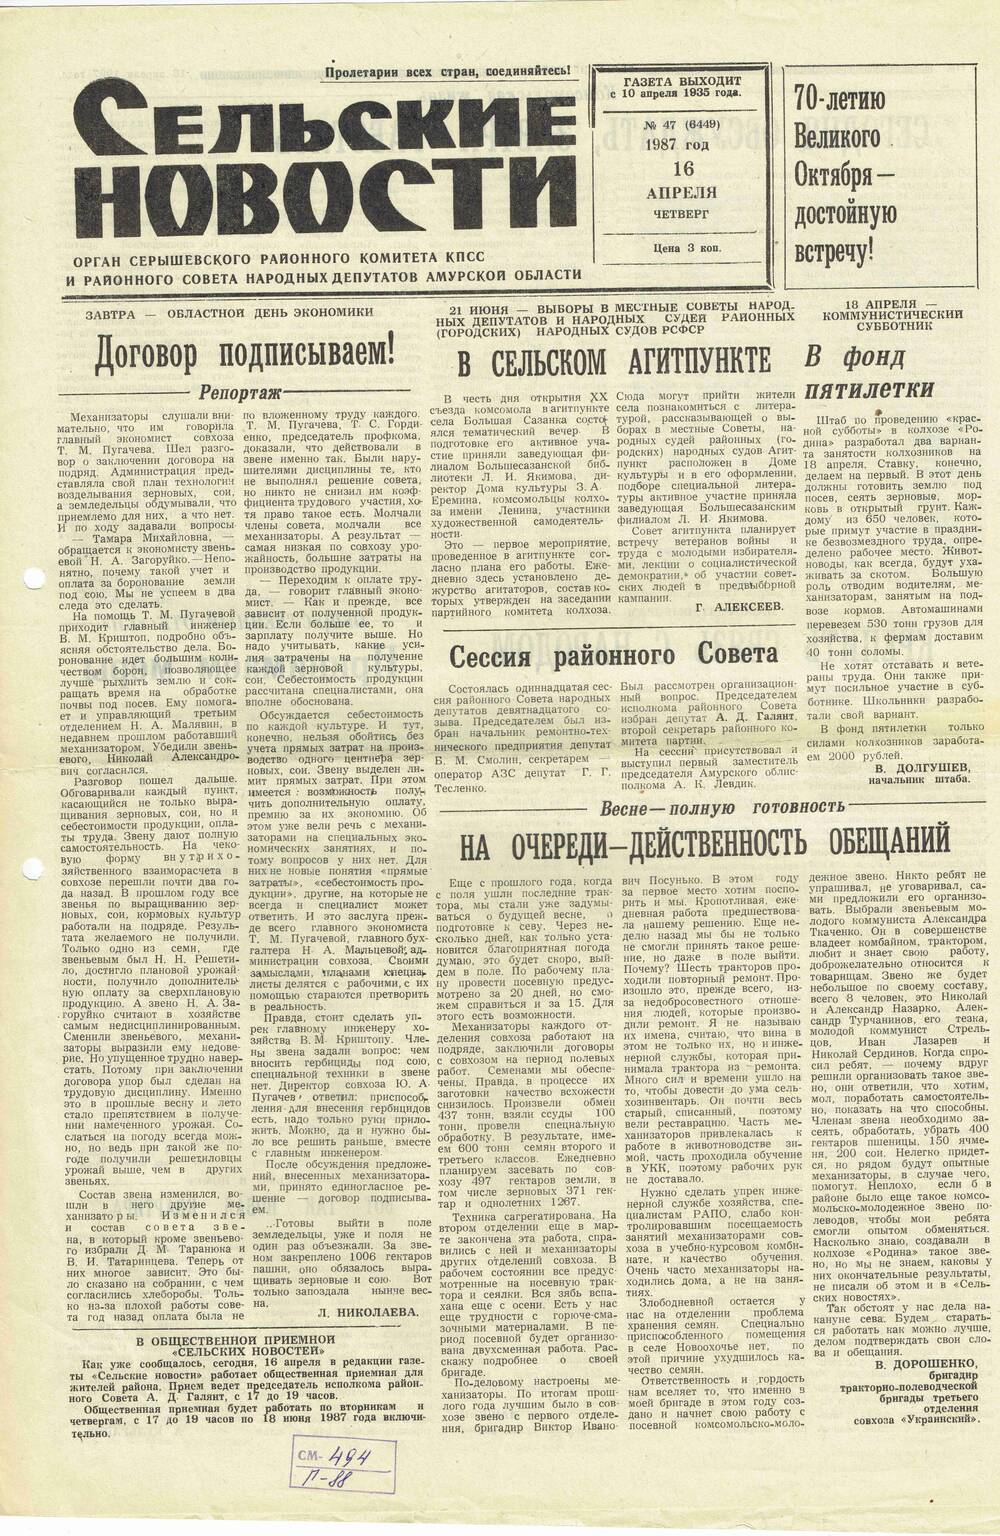 Газета «Сельские новости» №47 16.04.1987 года выпуска.